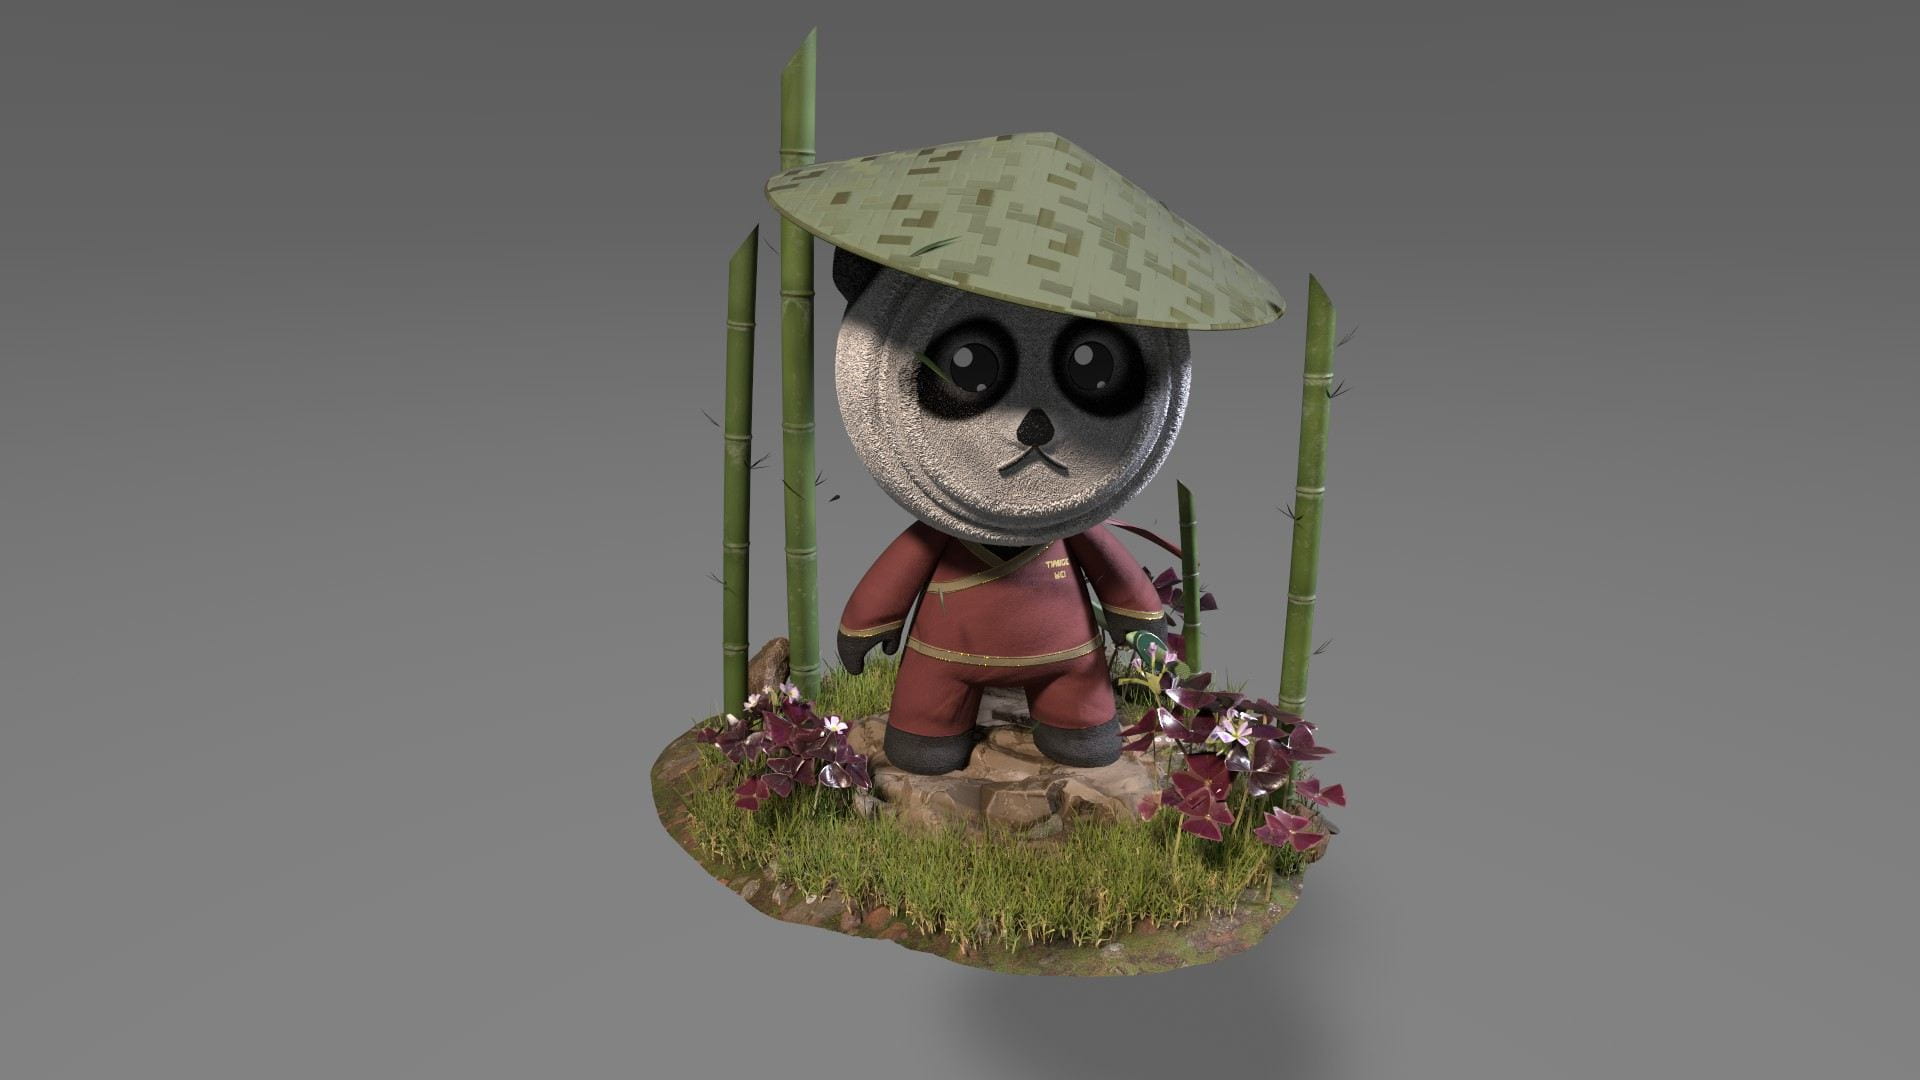 Tiange Wei - "Kong Fu Panda"